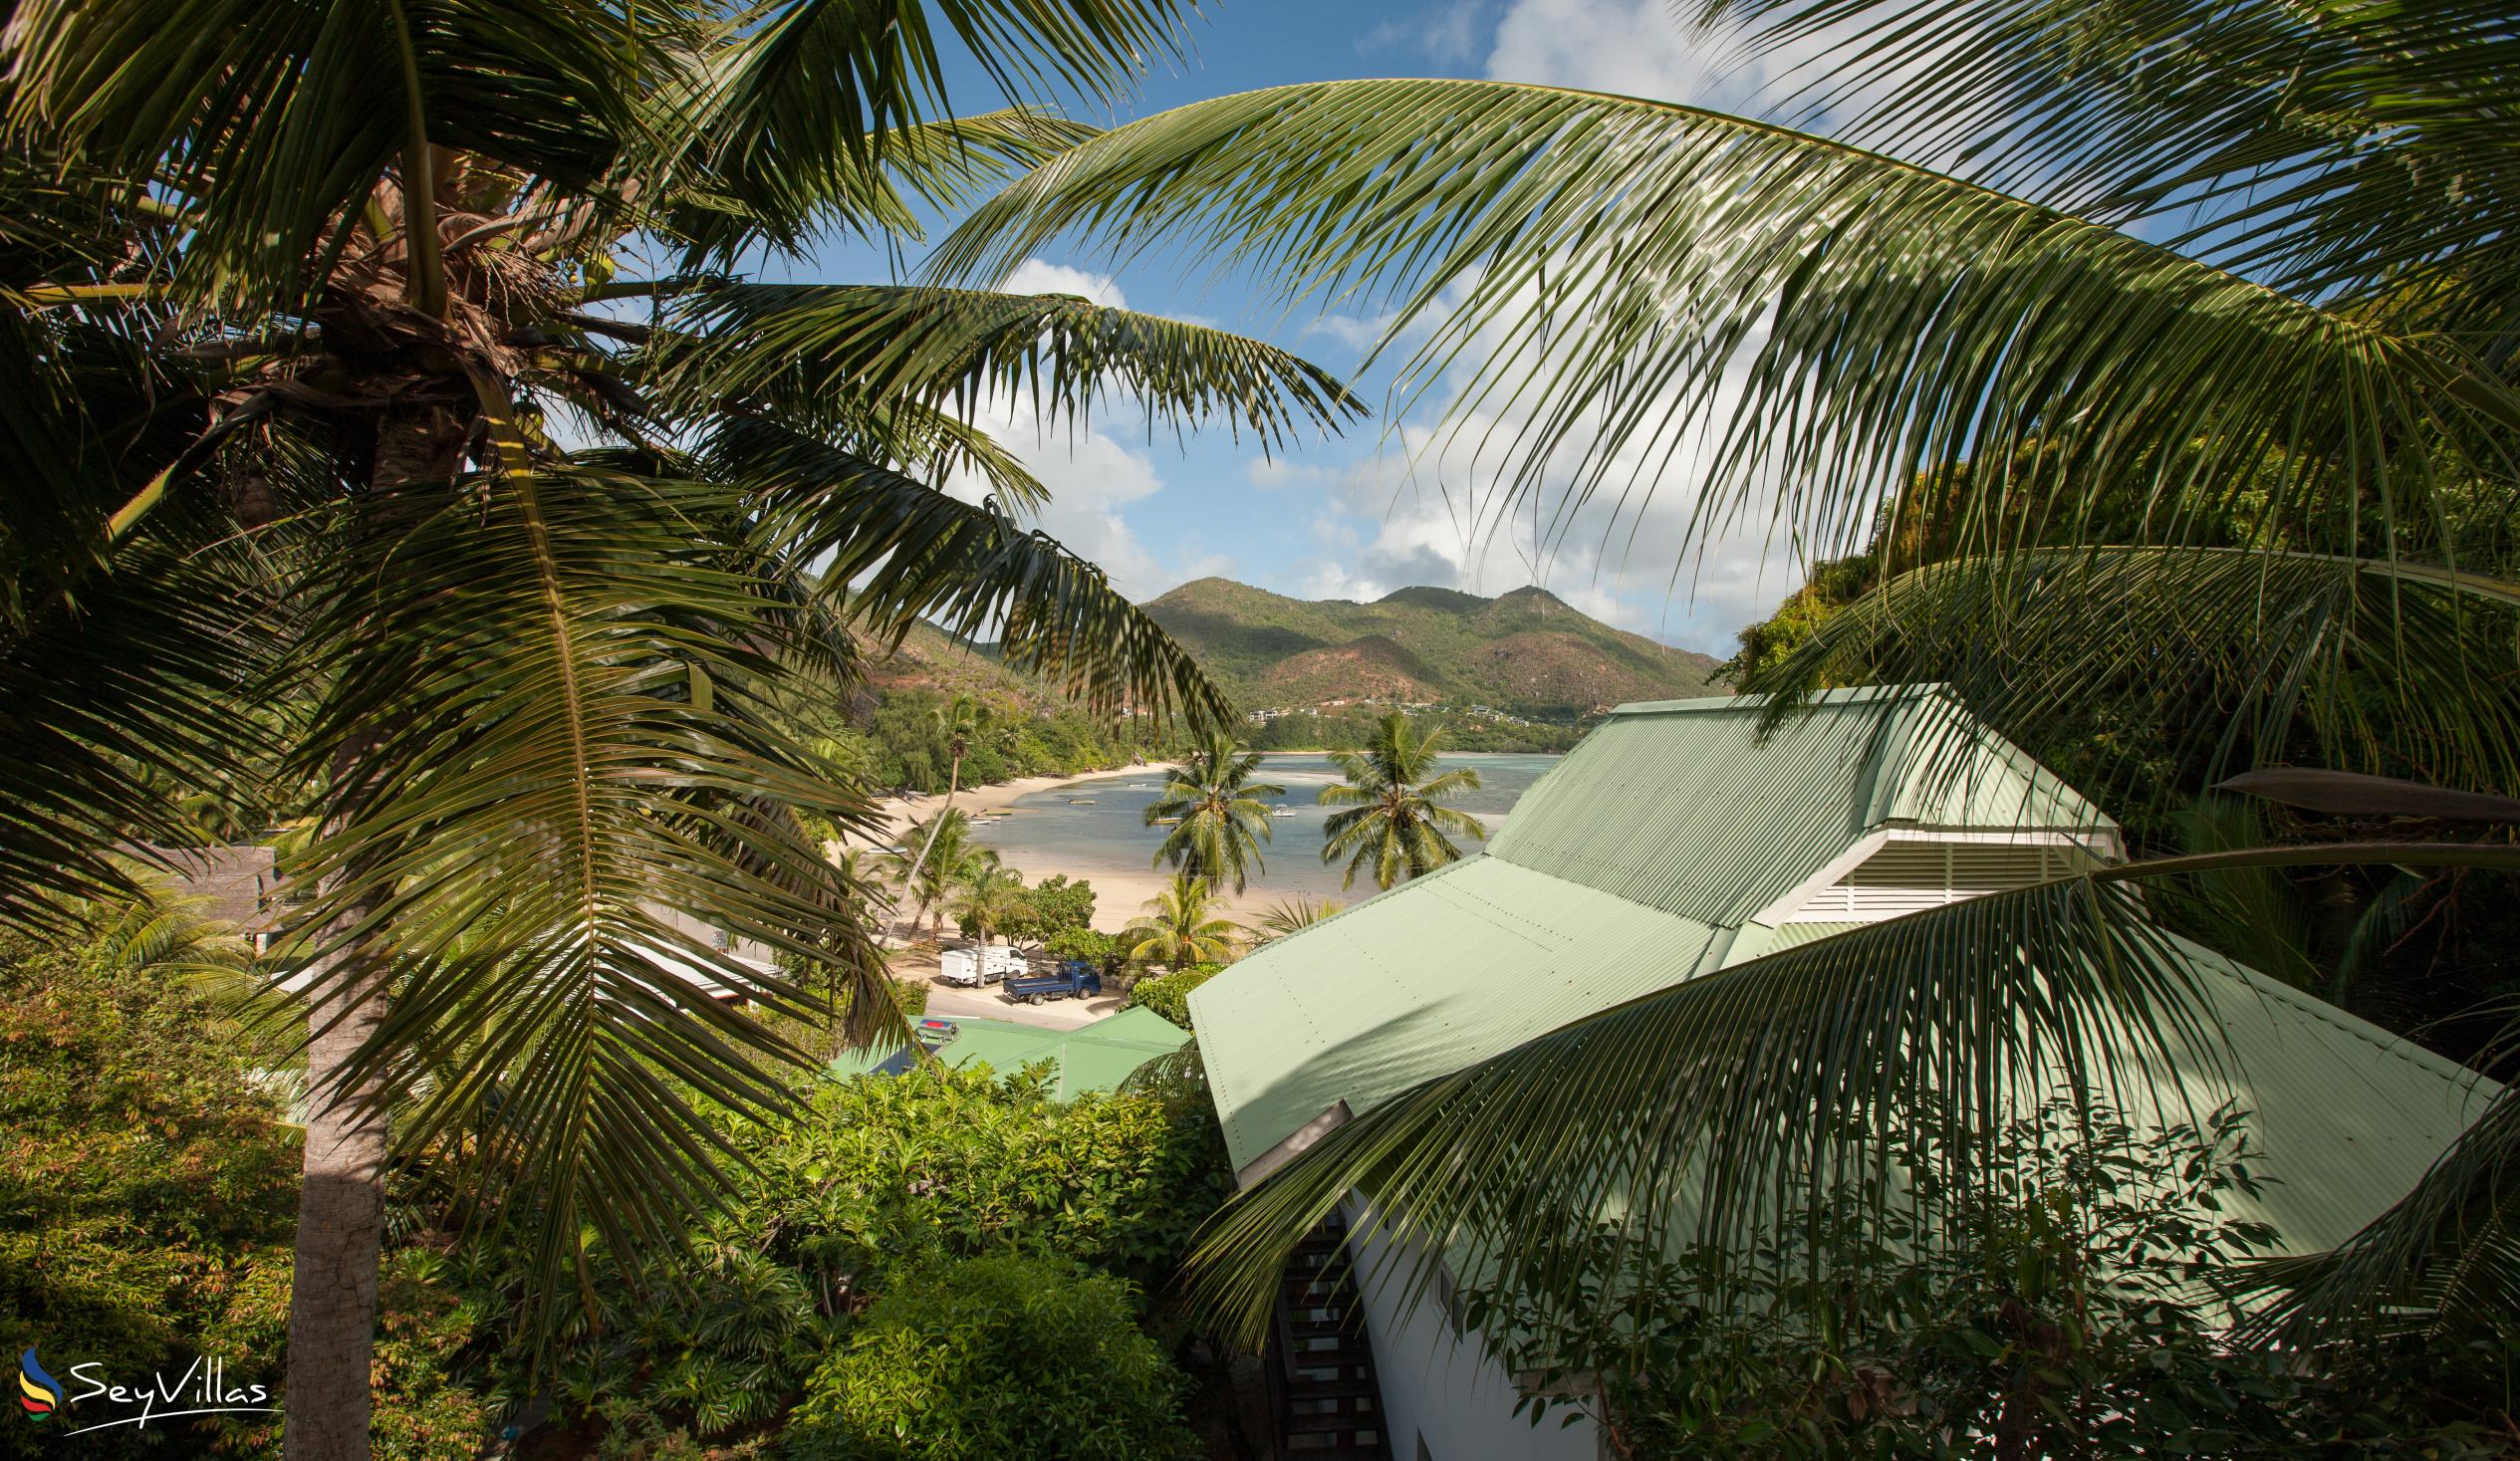 Foto 11: Sea View Lodge - Aussenbereich - Praslin (Seychellen)